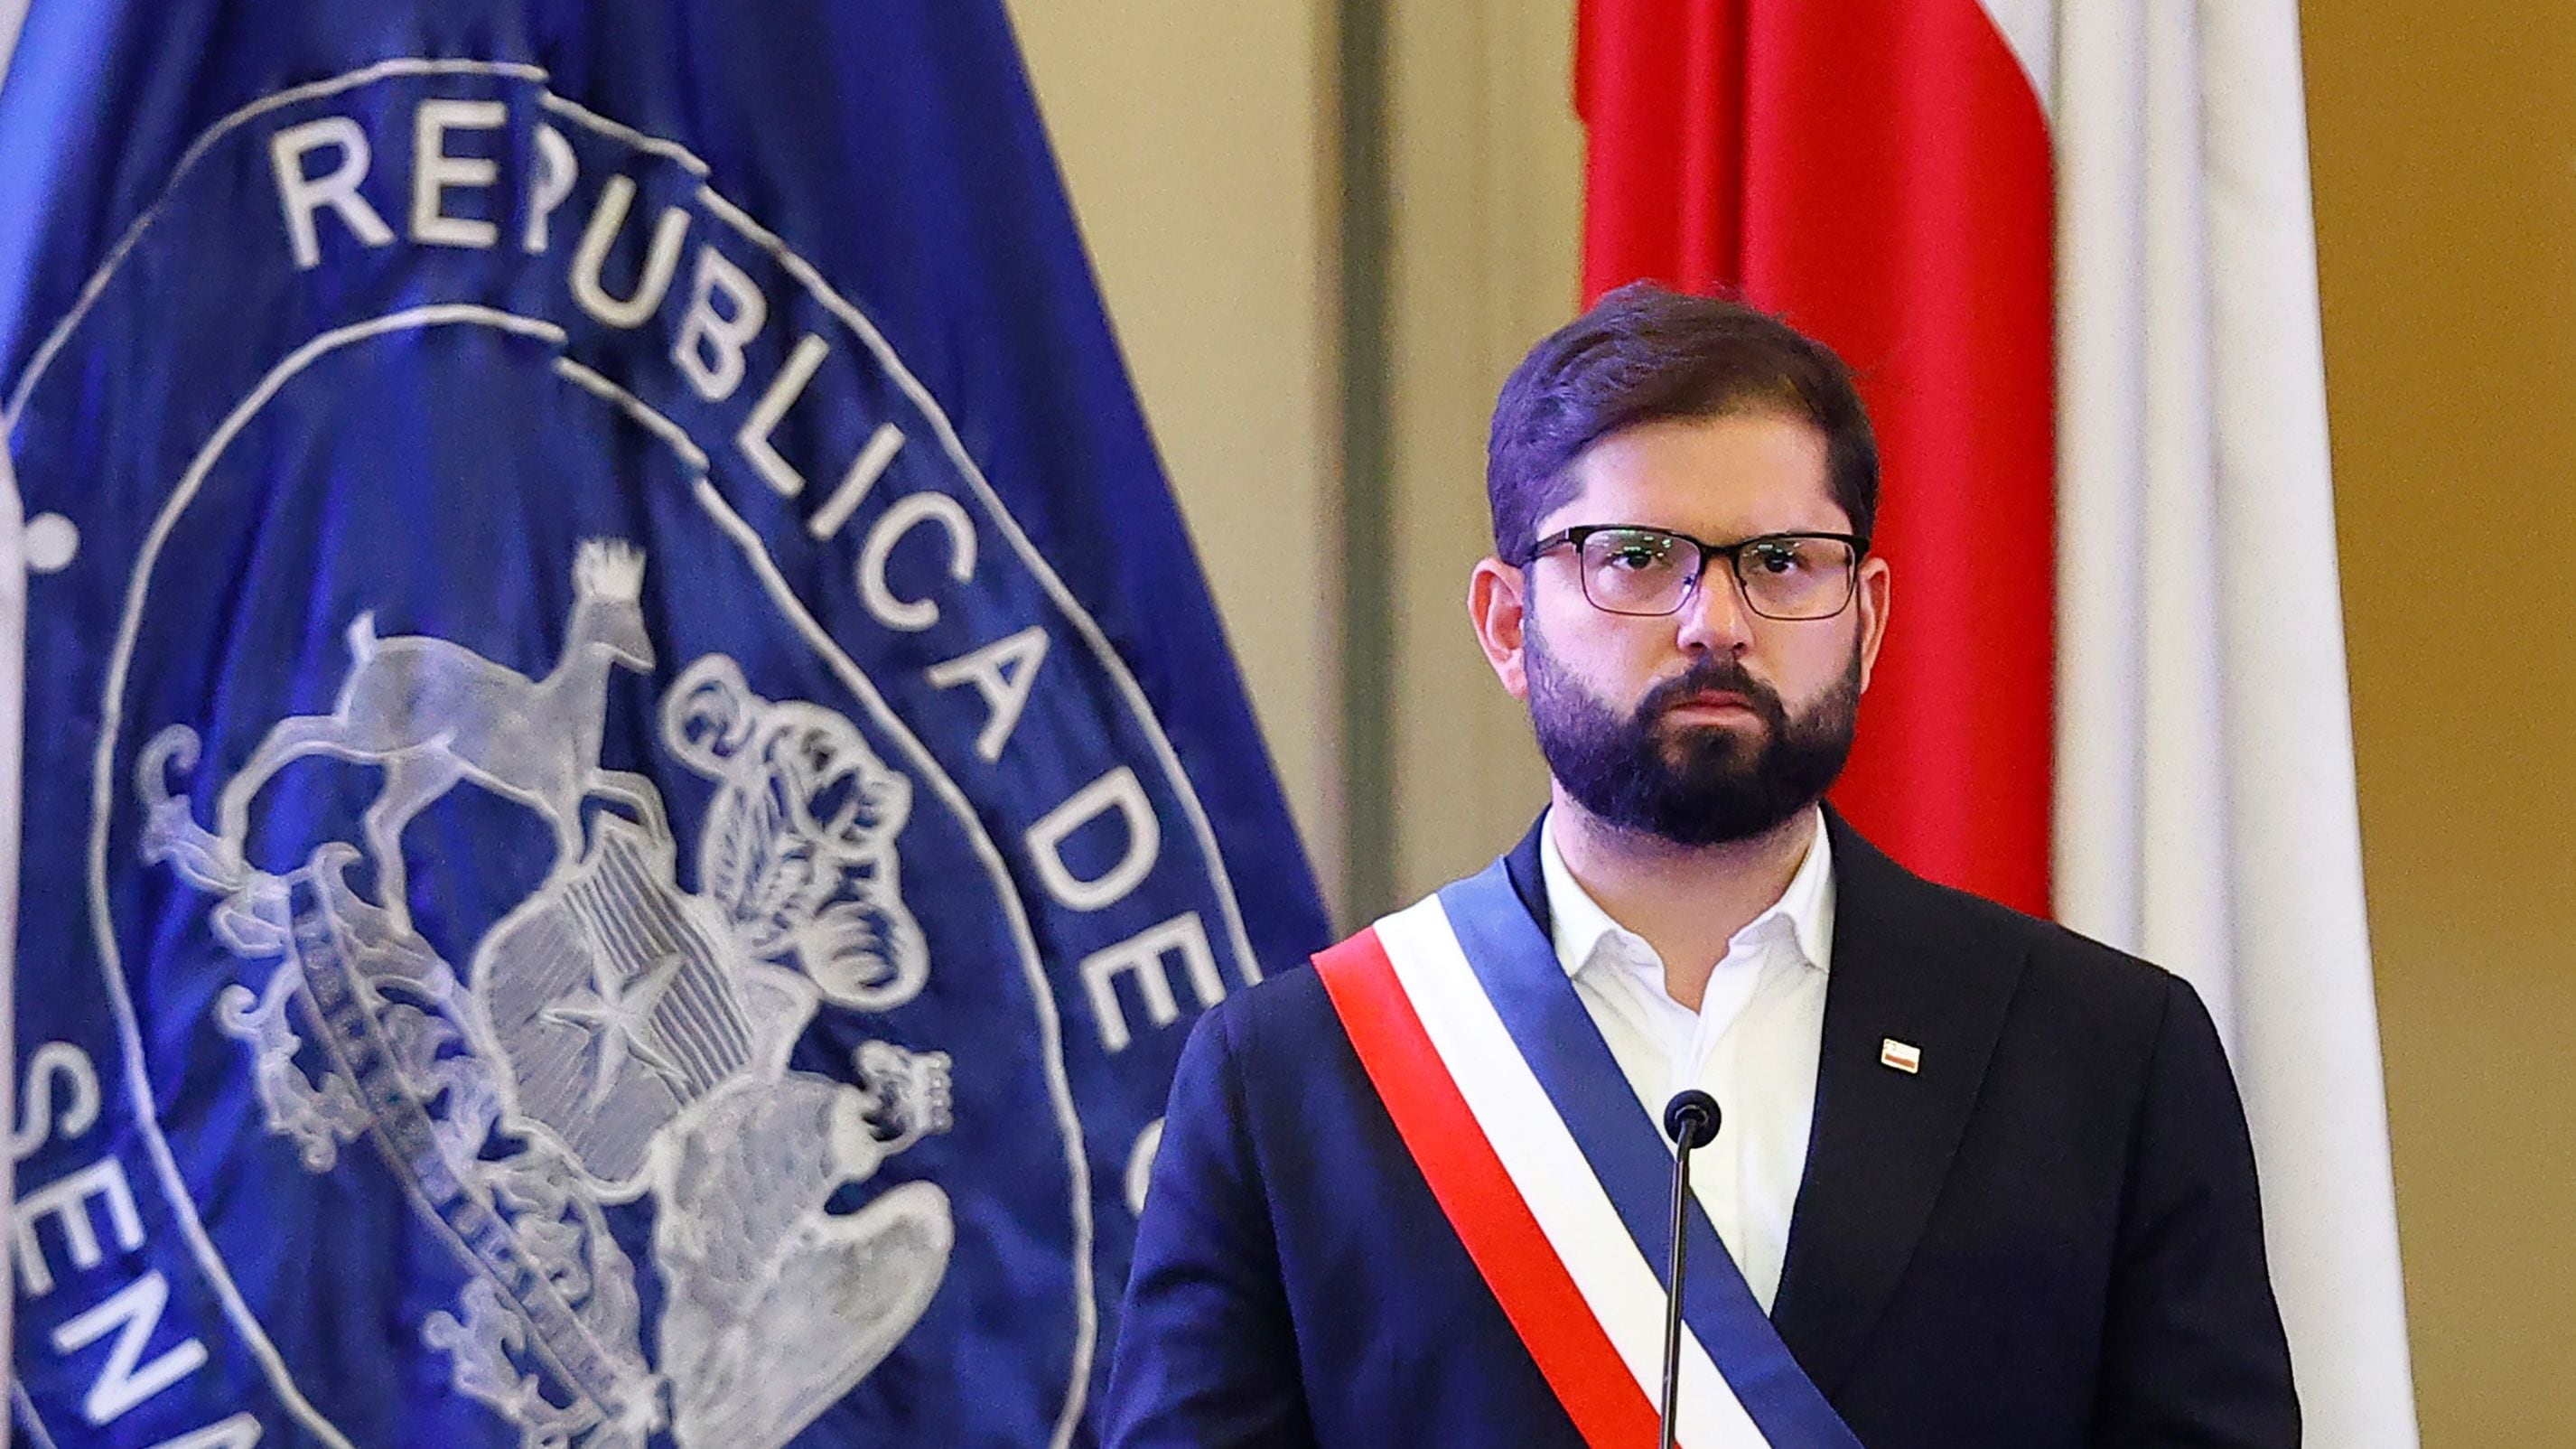 boric defiende a piñera ante maduro: “las diferencias entre chilenos las resolvemos acá”